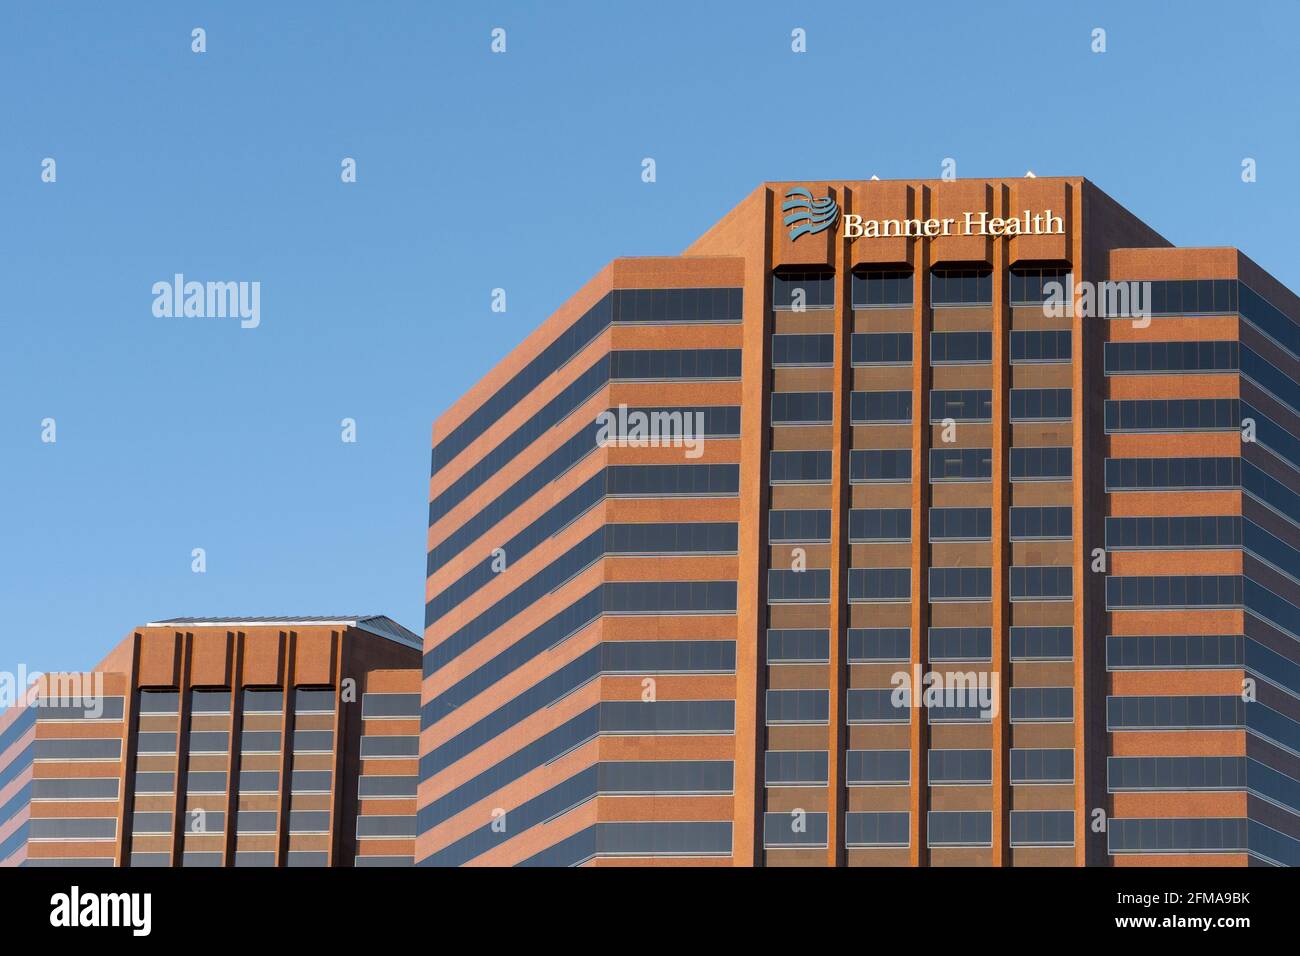 Phoenix, AZ - 20. März 2021: Banner Health Building in Midtown. Banner Health ist ein gemeinnütziges Gesundheitssystem in den Vereinigten Staaten mit Sitz in Phoenix, A Stockfoto